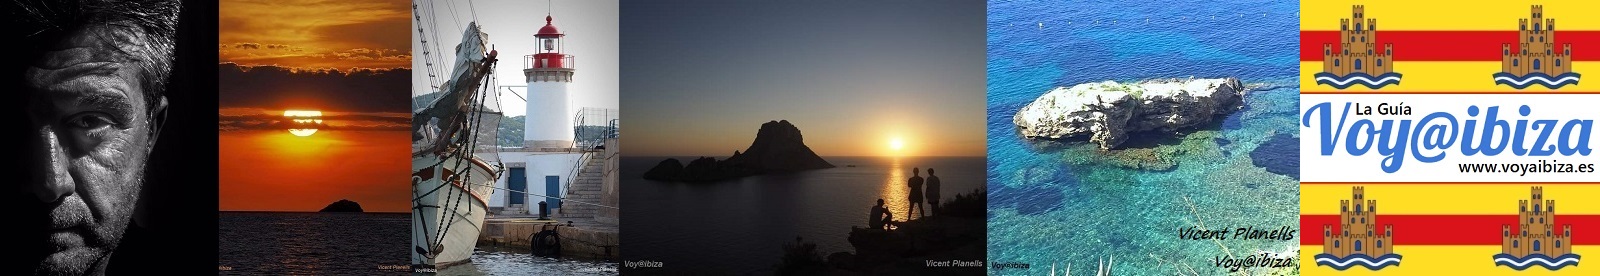 Galería de Fotos de Ibiza: Vicent Planells (II)